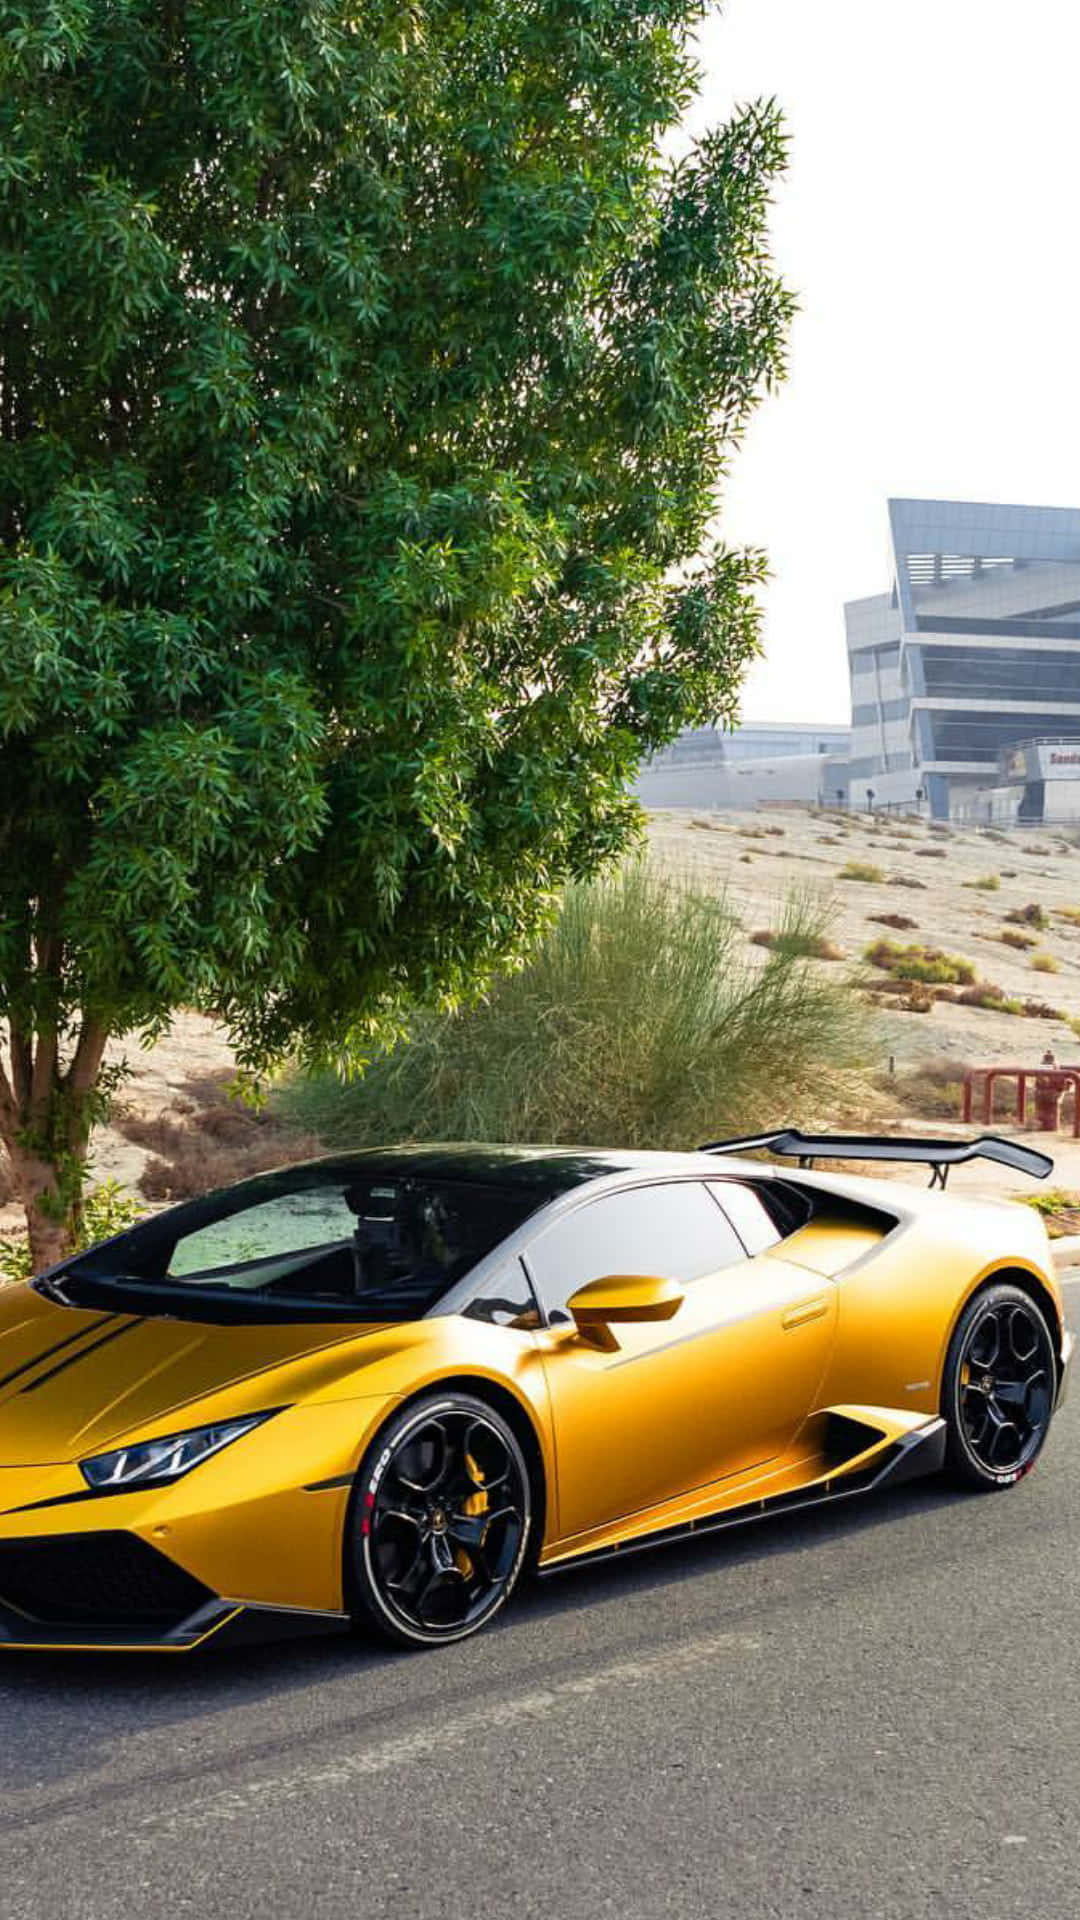 Gebensie Ihrem Stil Mit Einem Luxuriösen Goldenen Lamborghini Den Gewissen Kick. Wallpaper